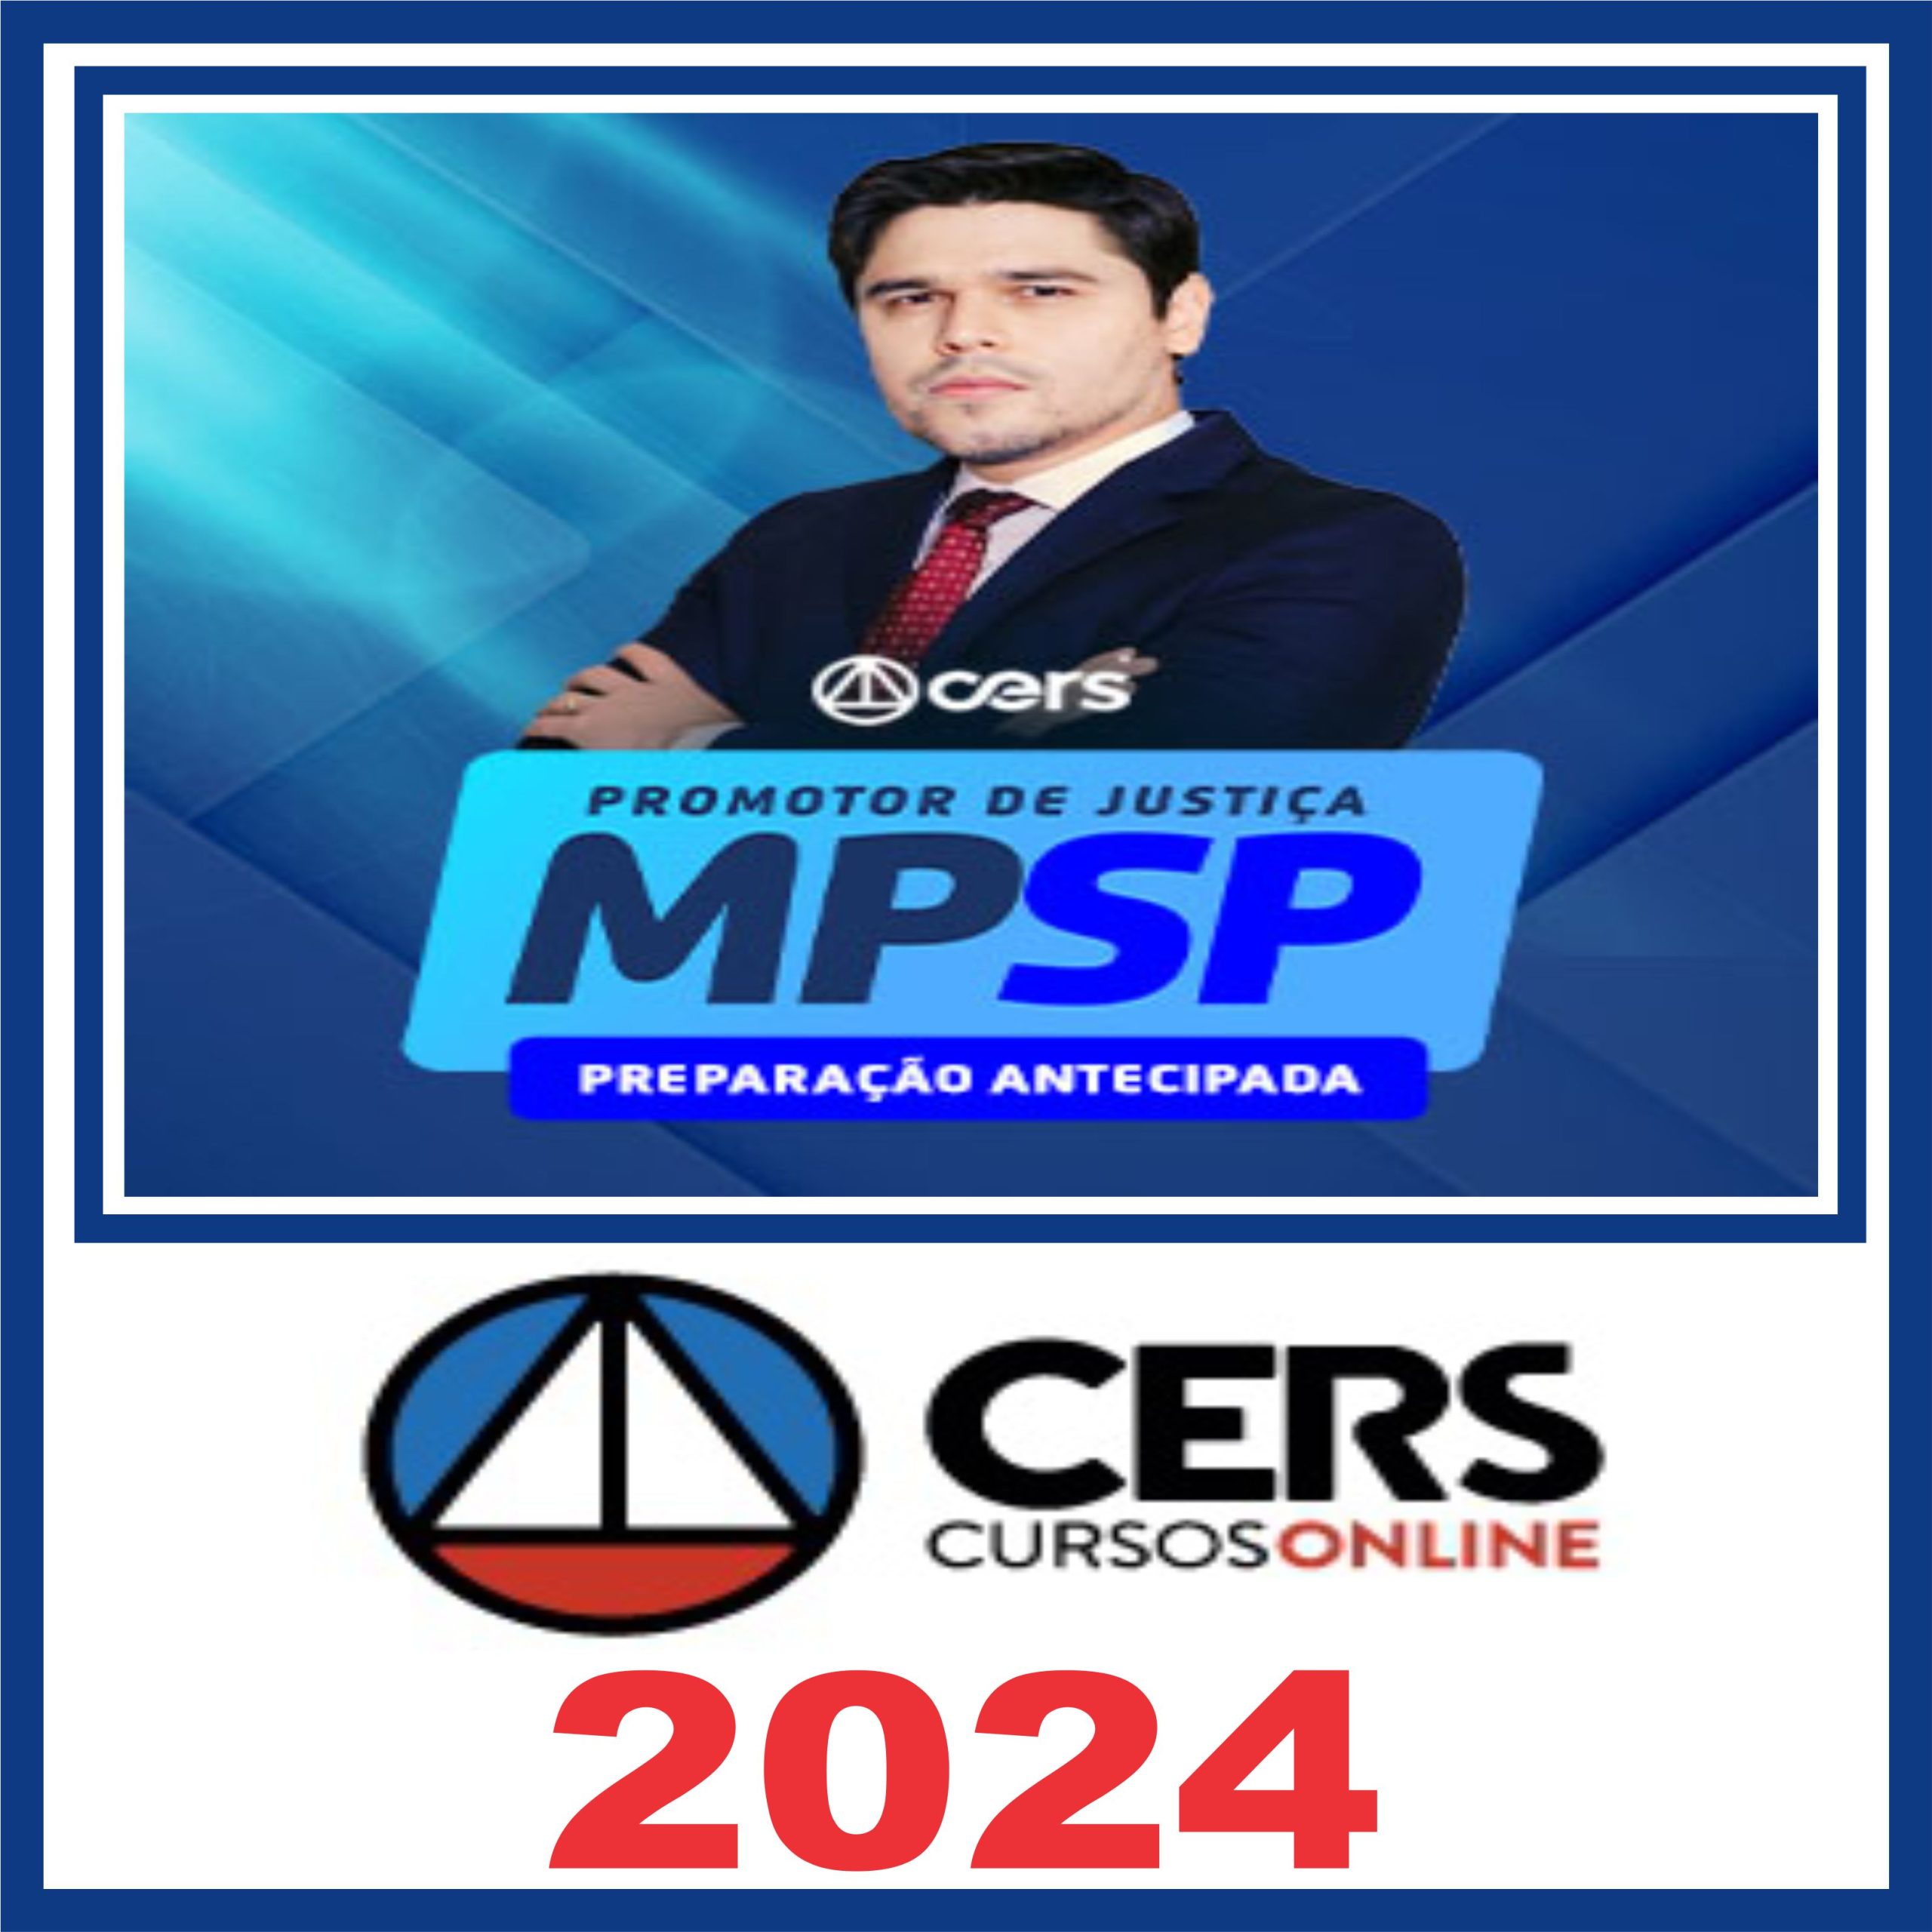 mp-sp-promotor-cers